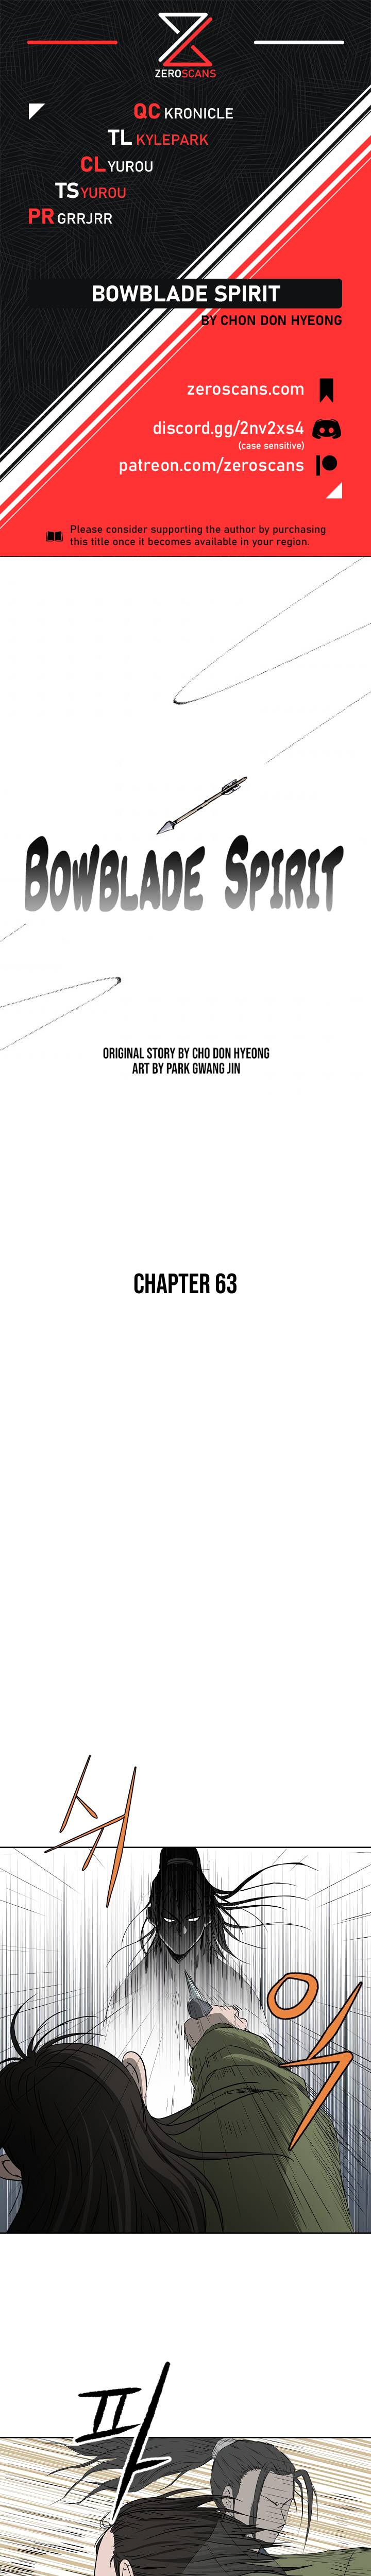 Bowblade Spirit - Chapter 63 Page 1